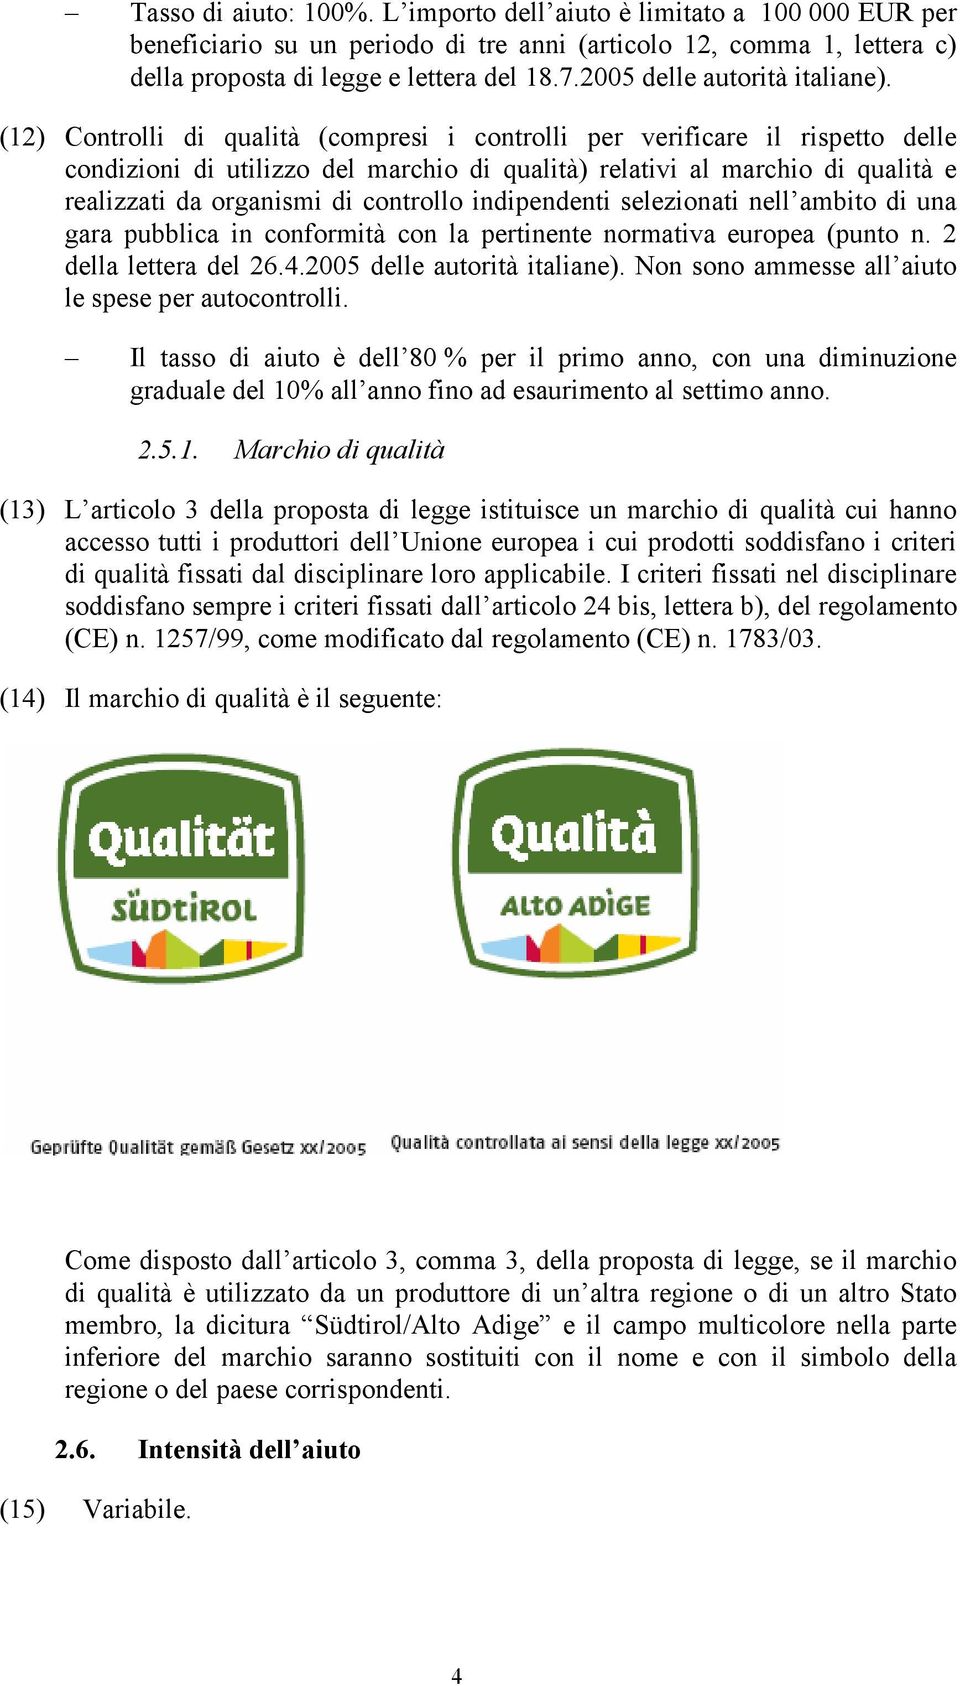 (12) Controlli di qualità (compresi i controlli per verificare il rispetto delle condizioni di utilizzo del marchio di qualità) relativi al marchio di qualità e realizzati da organismi di controllo